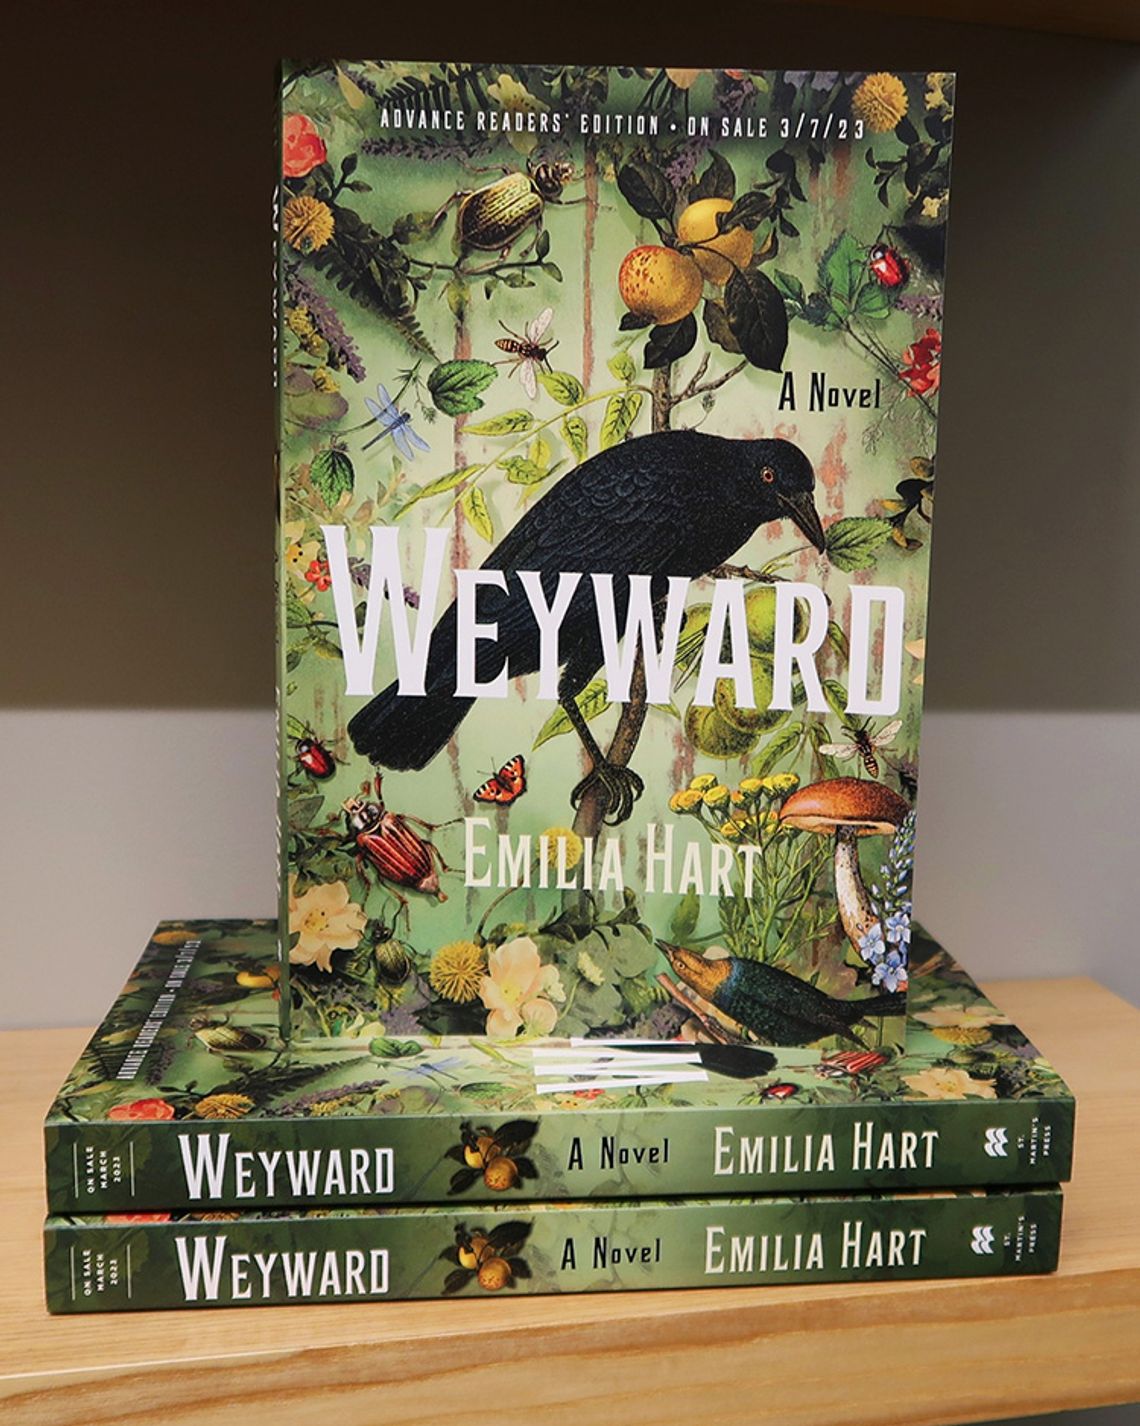 Allison’s Book Report — “Weyward” written by Emilia Hart